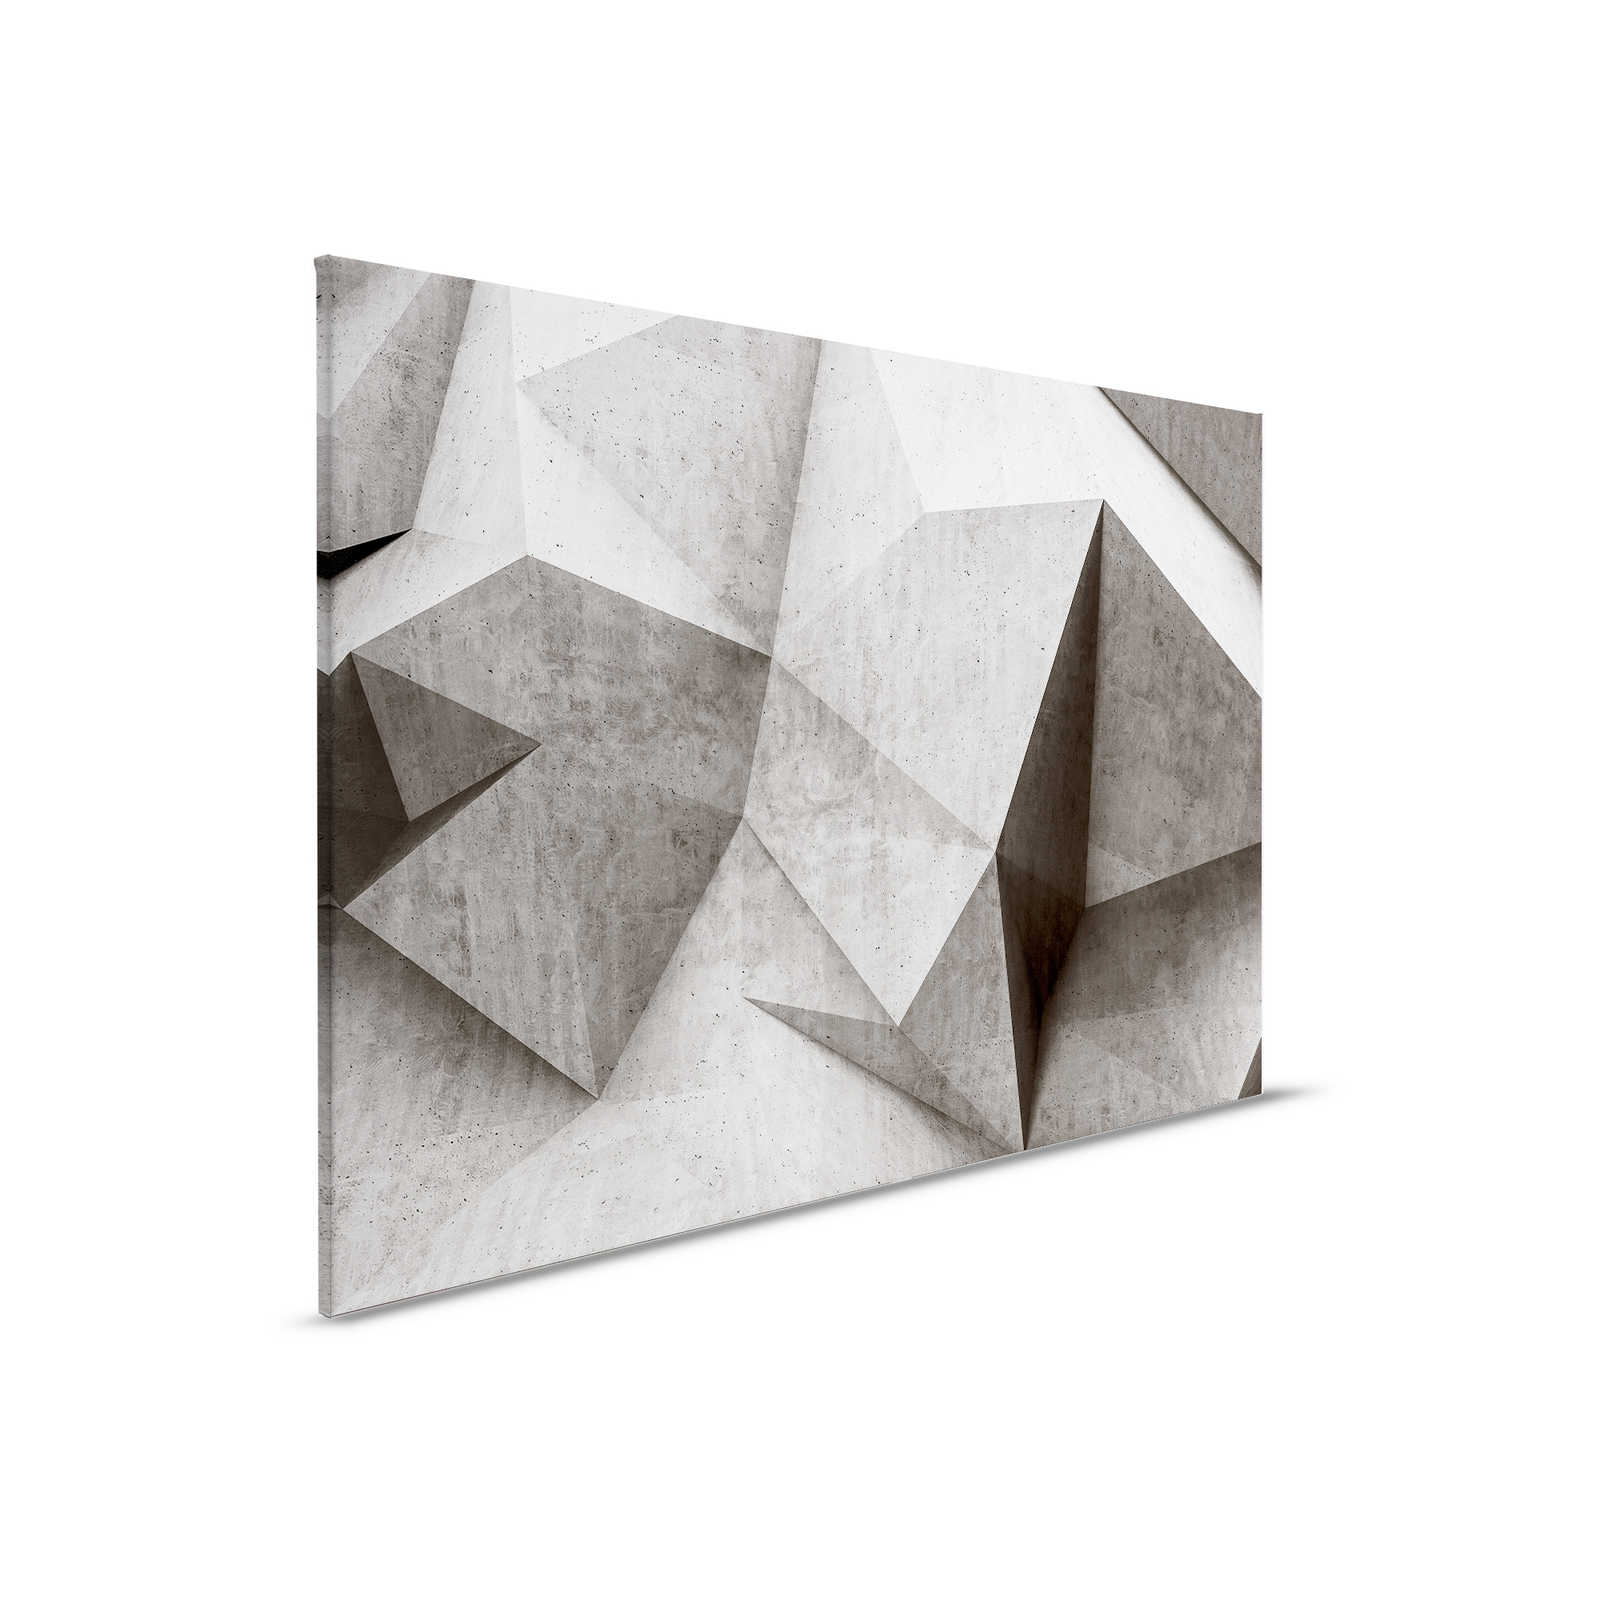 Boulder 1 - Cool 3D Concrete Polygons Canvas Painting - 0.90 m x 0.60 m
